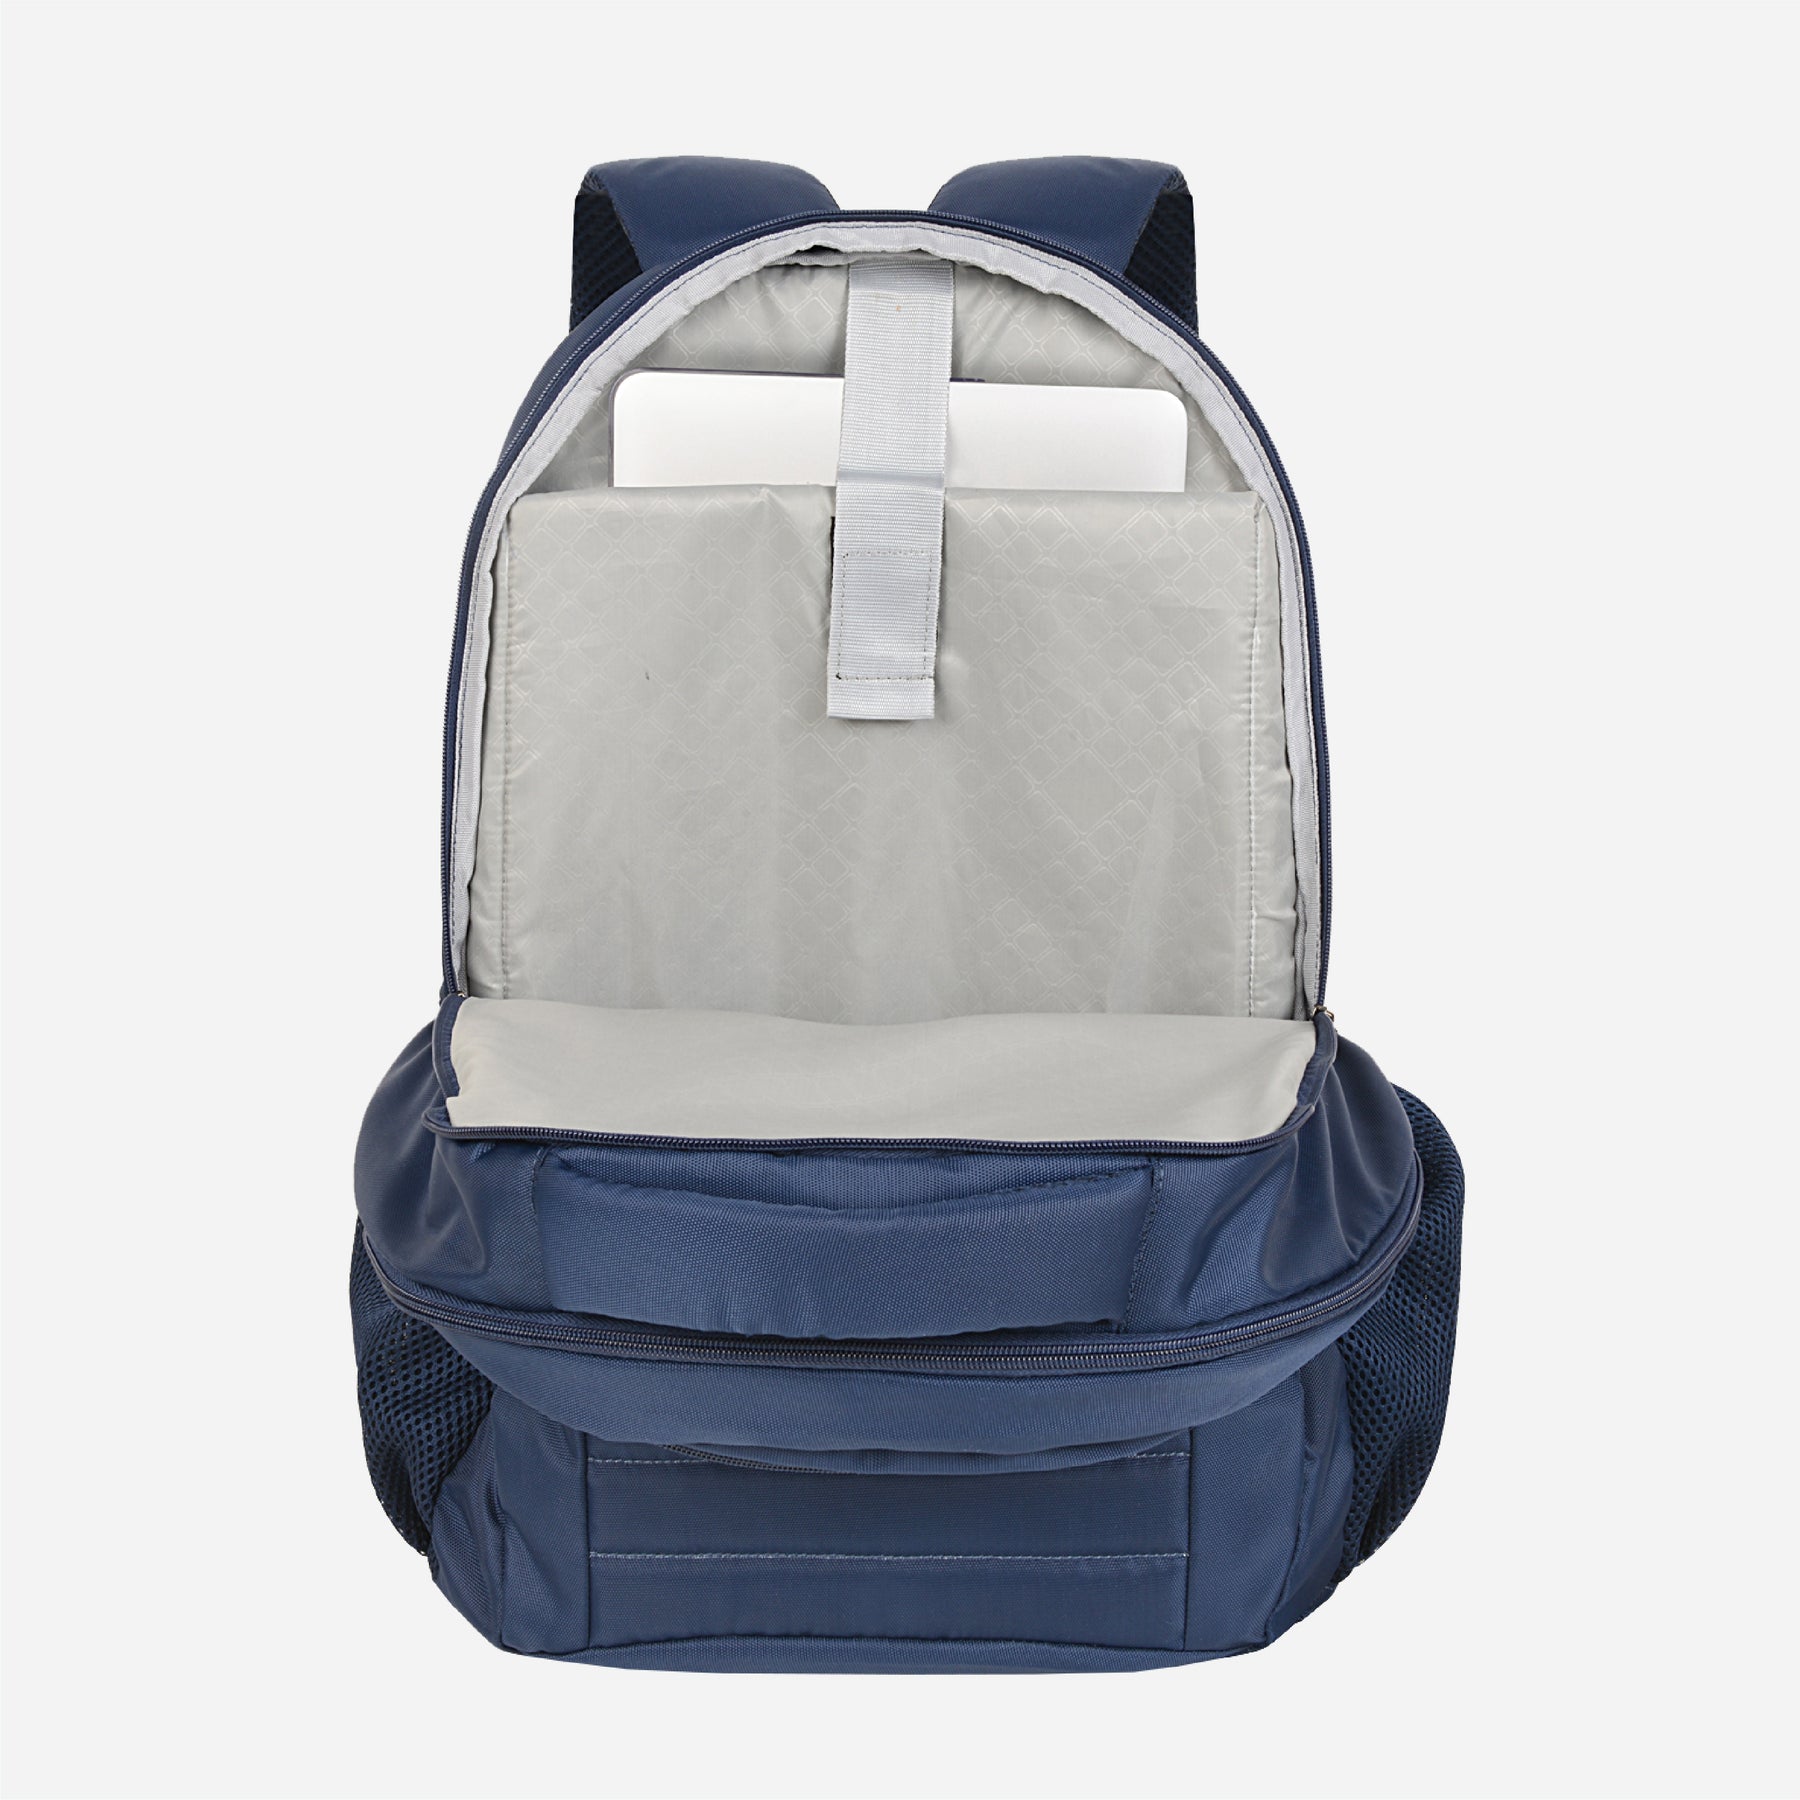 Buy Safari New Backpack Duo 4 Blue high Volume Trendy at